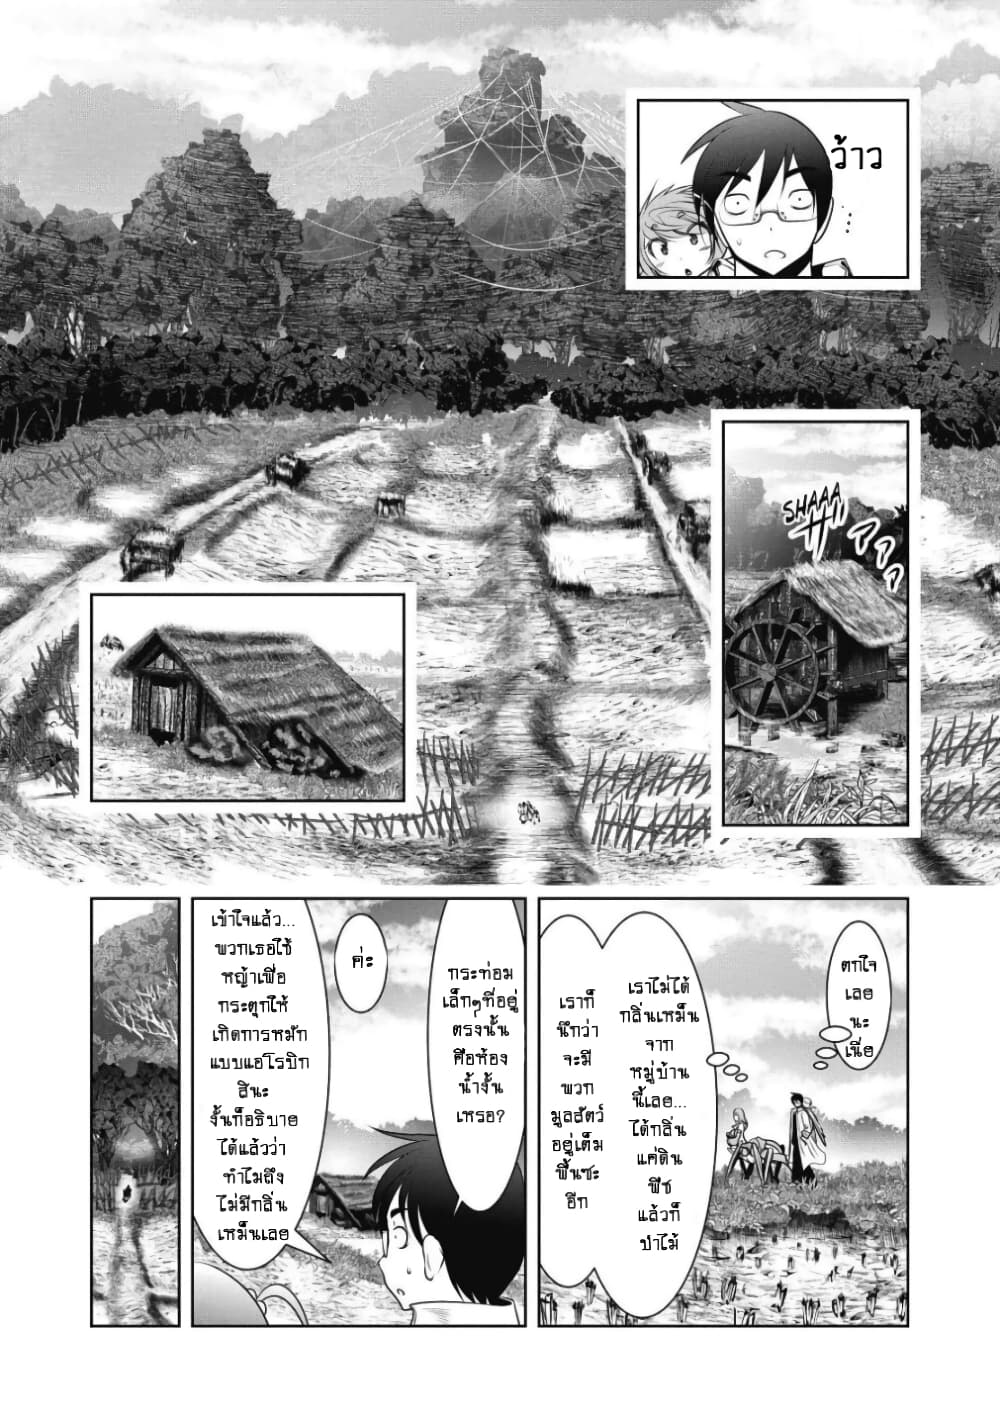 Kagaku teki ni Sonzai shiuru Creature Musume no Kansatsu Nisshi 2 (16)